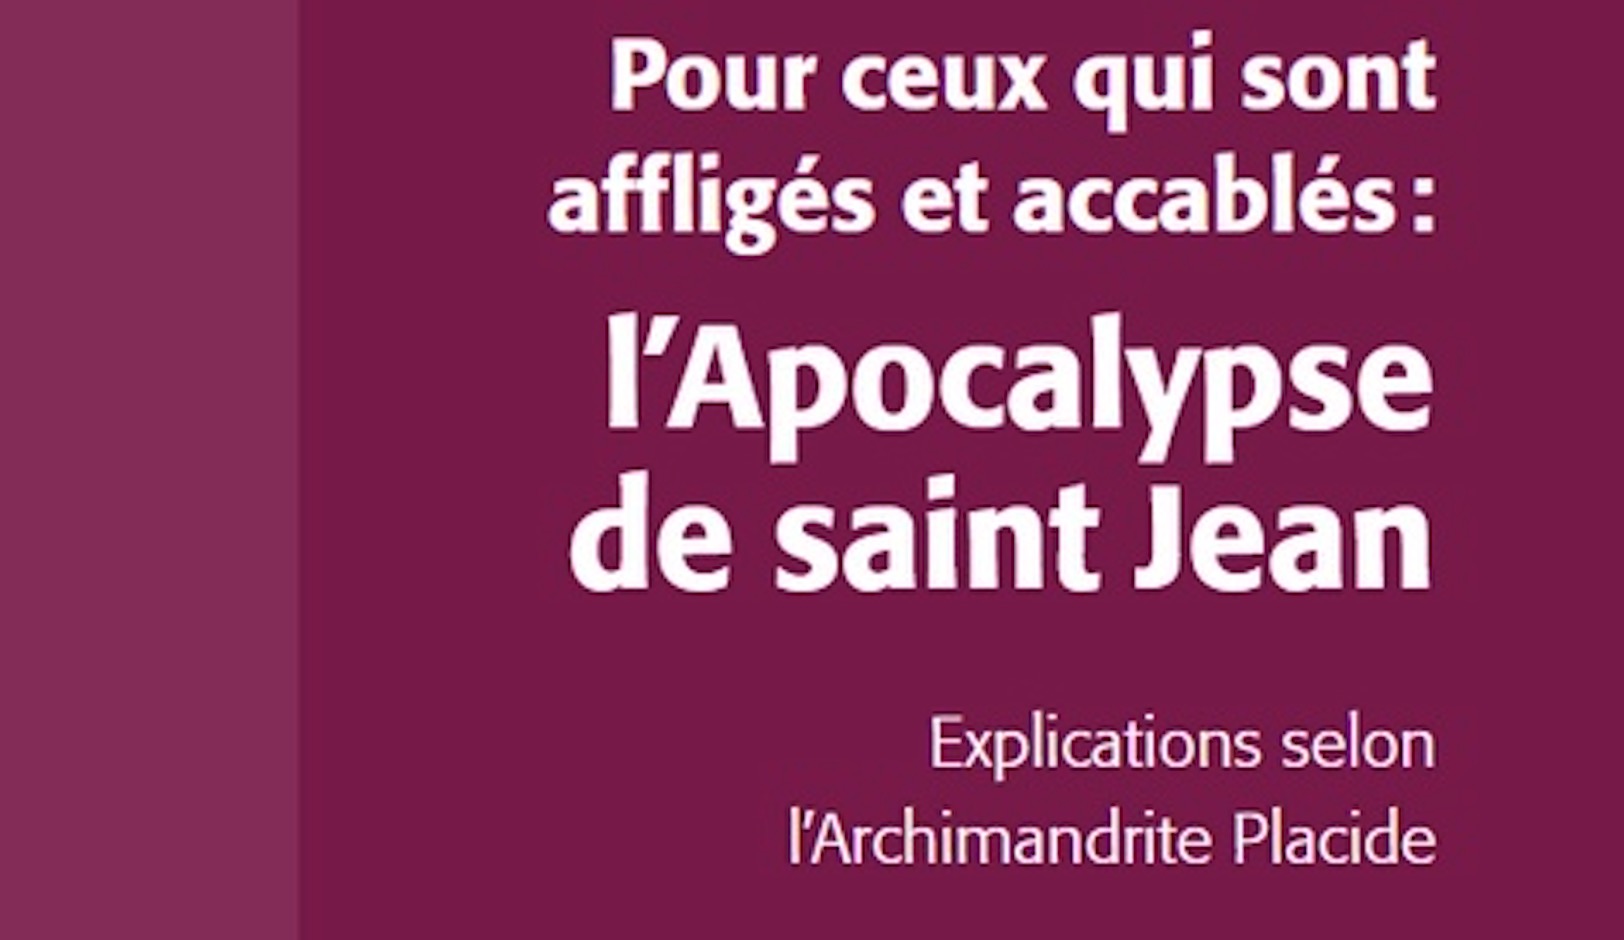 Vient de paraître : « pour ceux qui sont affligés et accablés : l’apocalypse de saint jean » par l’archimandrite placide deseille